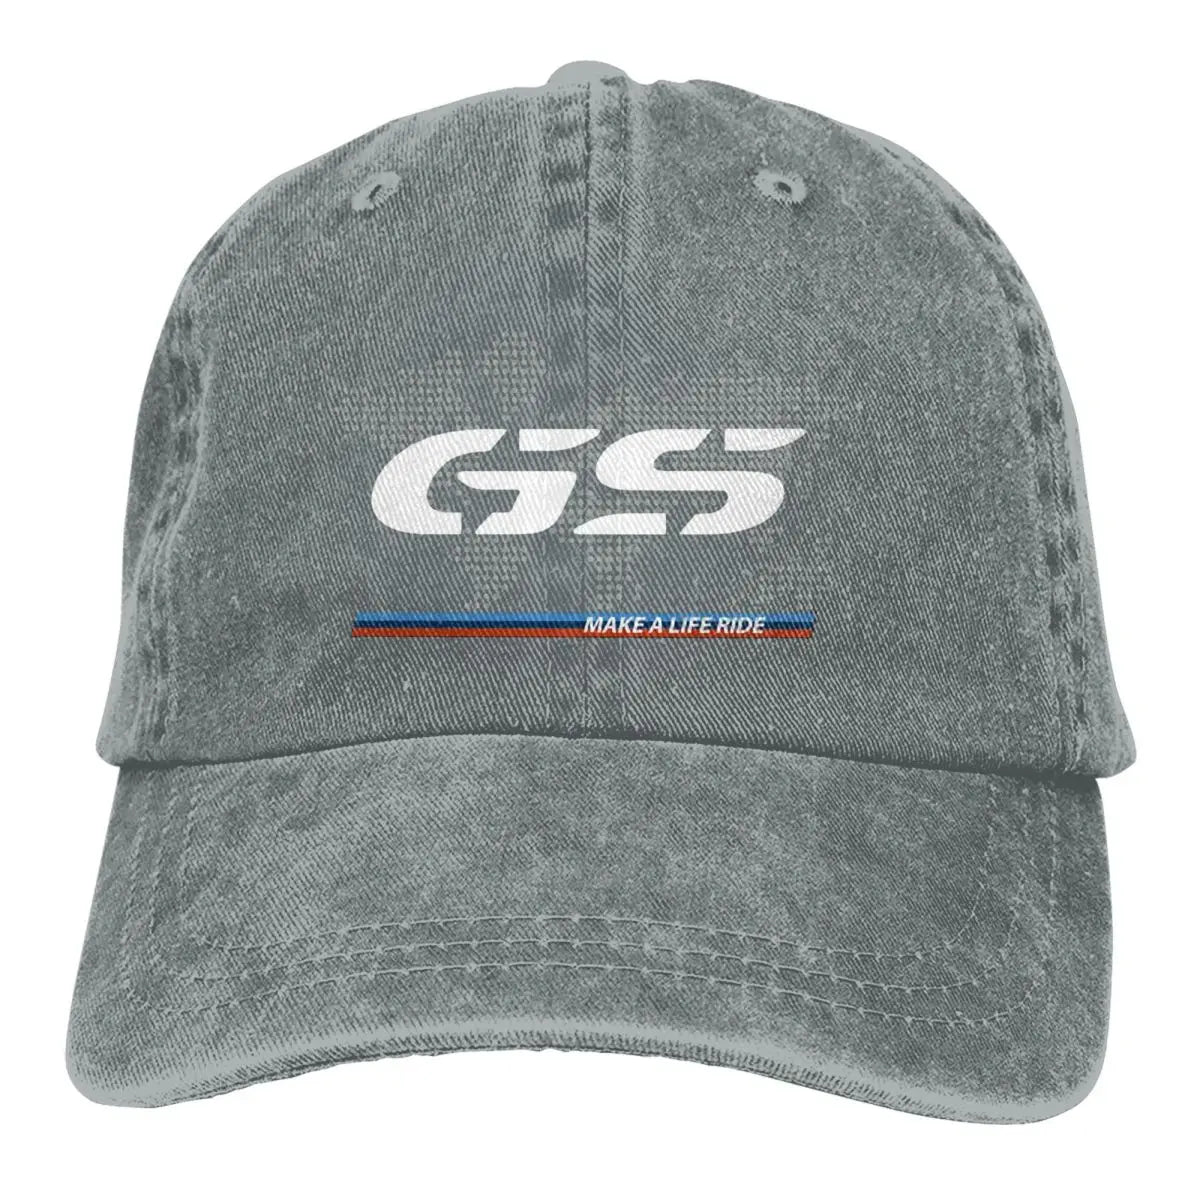 Casquette GS grise